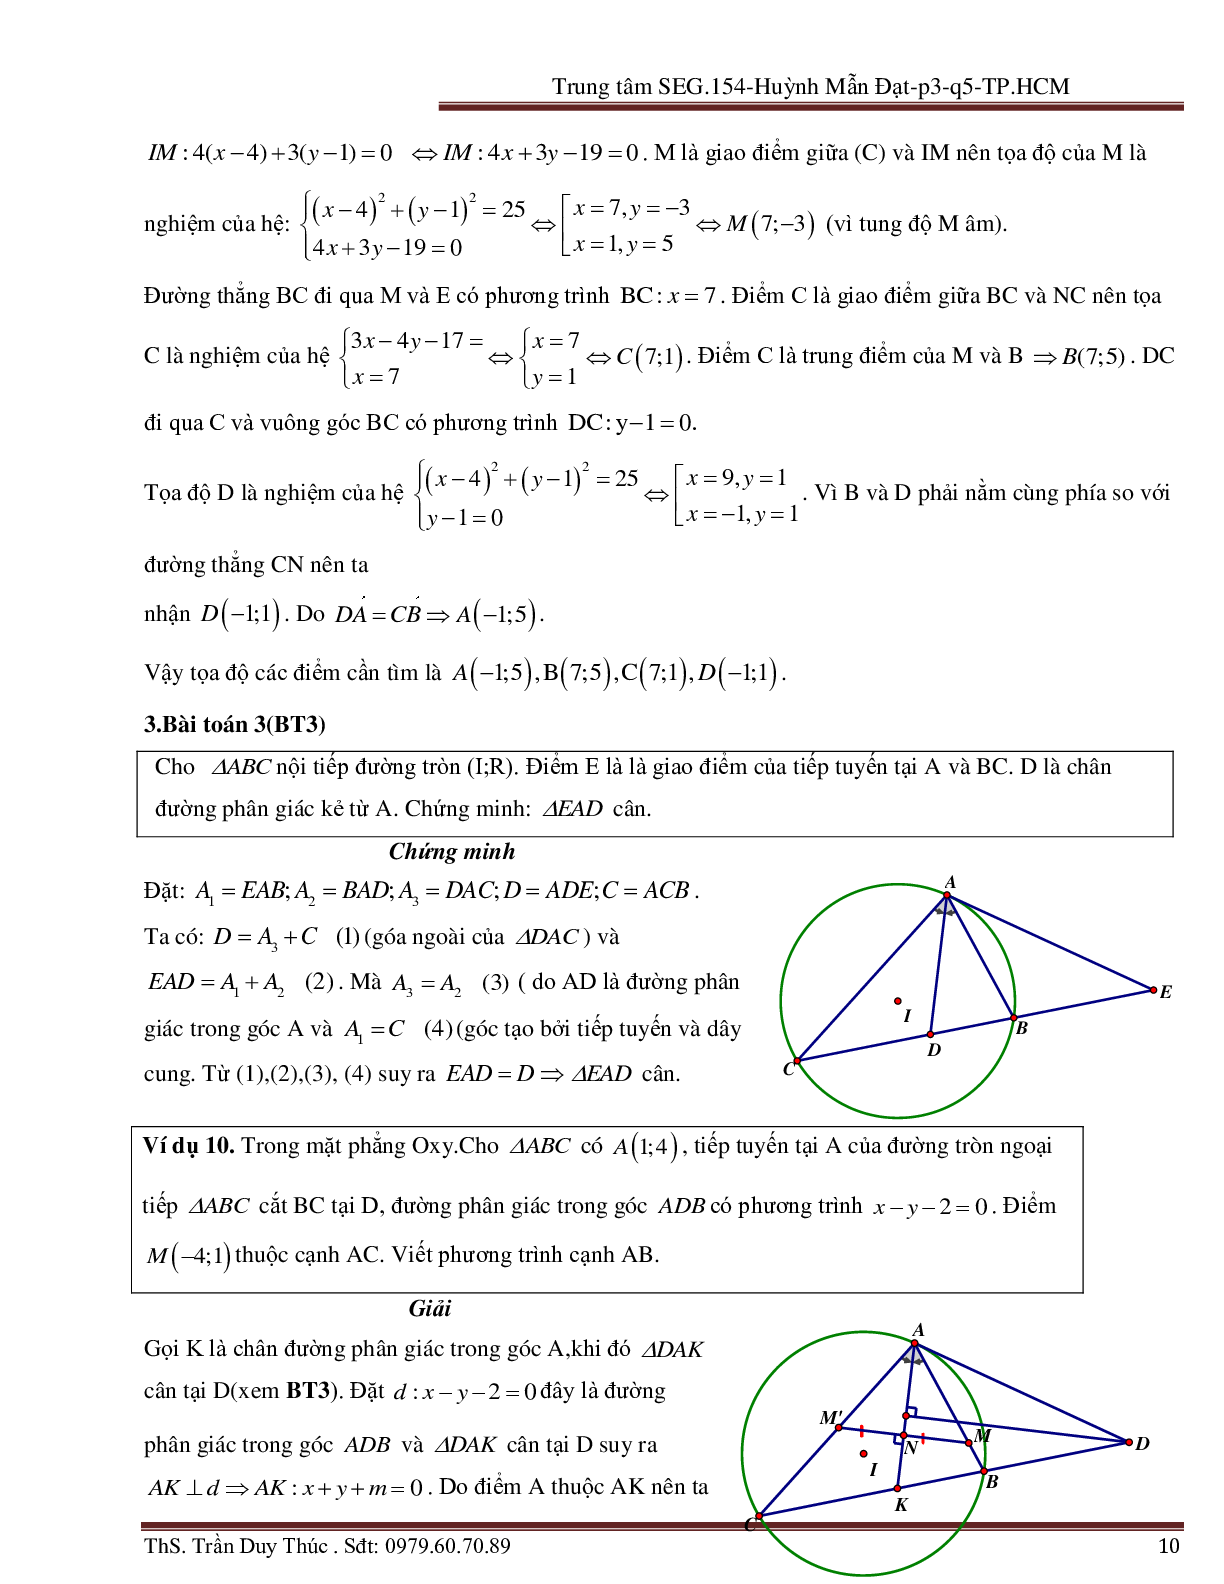 Vận dụng tính chất hình phẳng để giải bài toán Oxy liên quan đến đường tròn (trang 10)